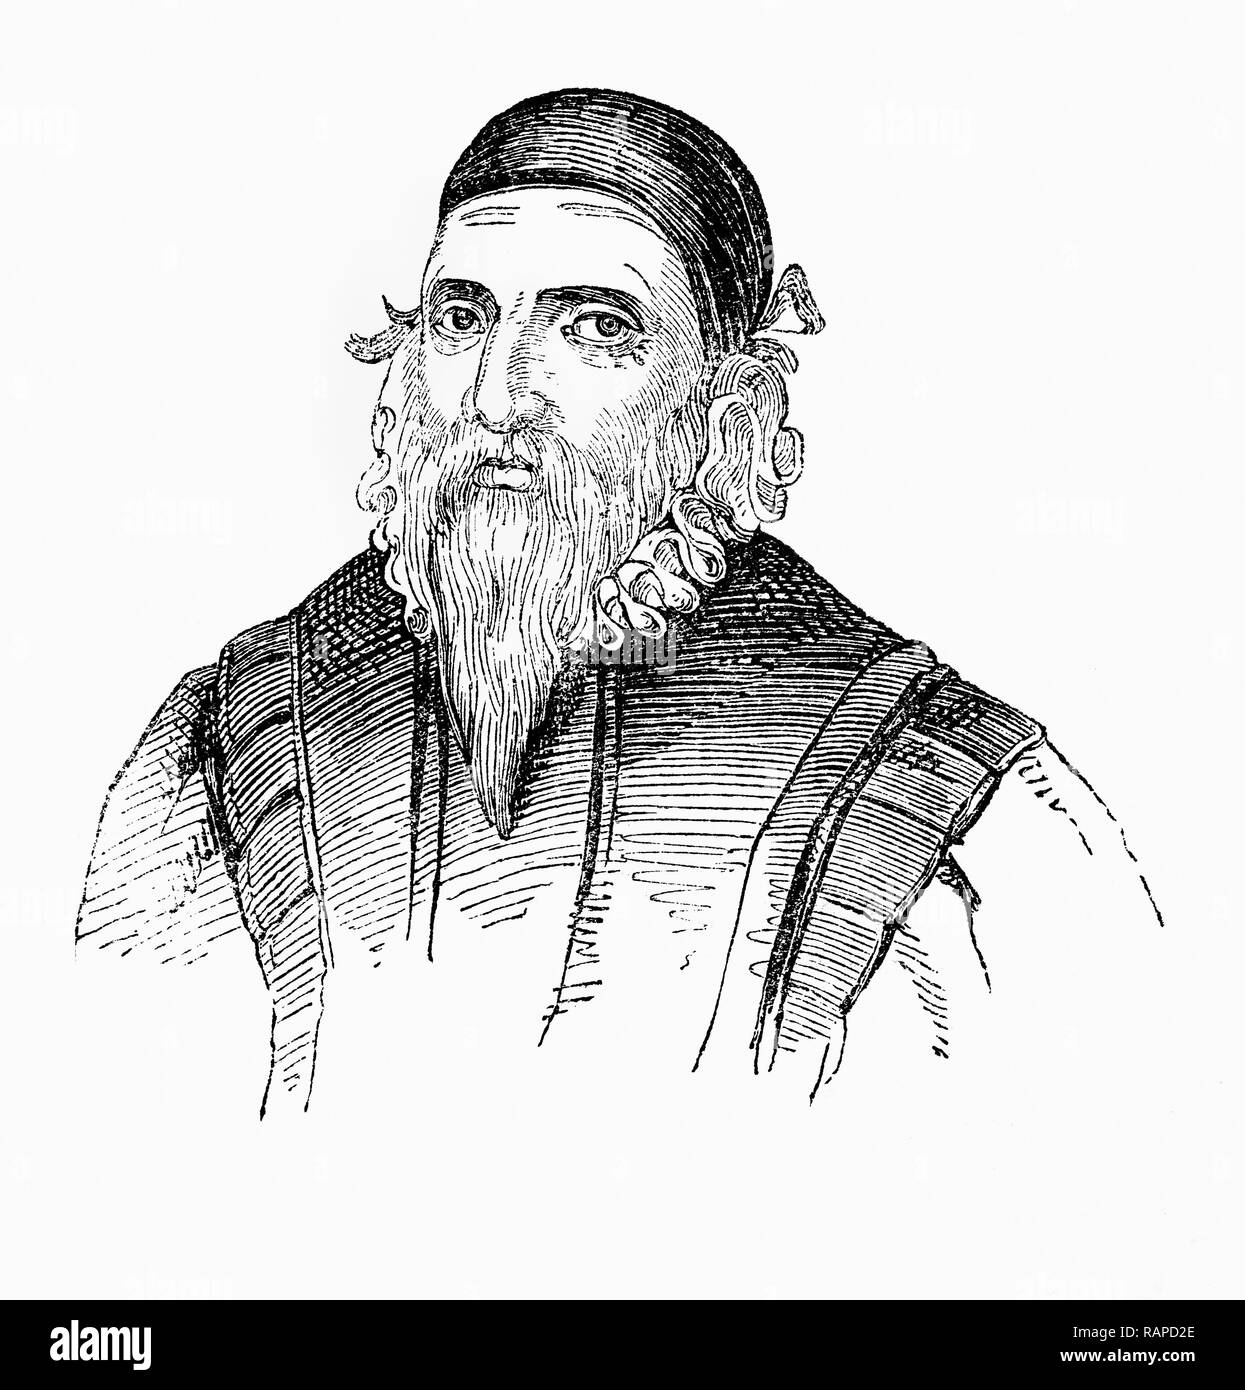 John Dee (1527 - 1608/9) était un mathématicien, astronome, astrologue, philosophe, occulte et conseiller de la Reine Elizabeth I. Il a consacré une grande partie de sa vie à l'étude de l'alchimie, la divination, et la philosophie hermétique, activités qui semblerait à cheval sur les mondes de la magie et de la science moderne. Un ardent promoteur des mathématiques, il était aussi un des principaux experts en navigation, la formation de nombreux de ceux qui voudraient effectuer des voyages de découverte de l'Angleterre. On lui attribue la paternité de l'expression "Empire britannique". Banque D'Images